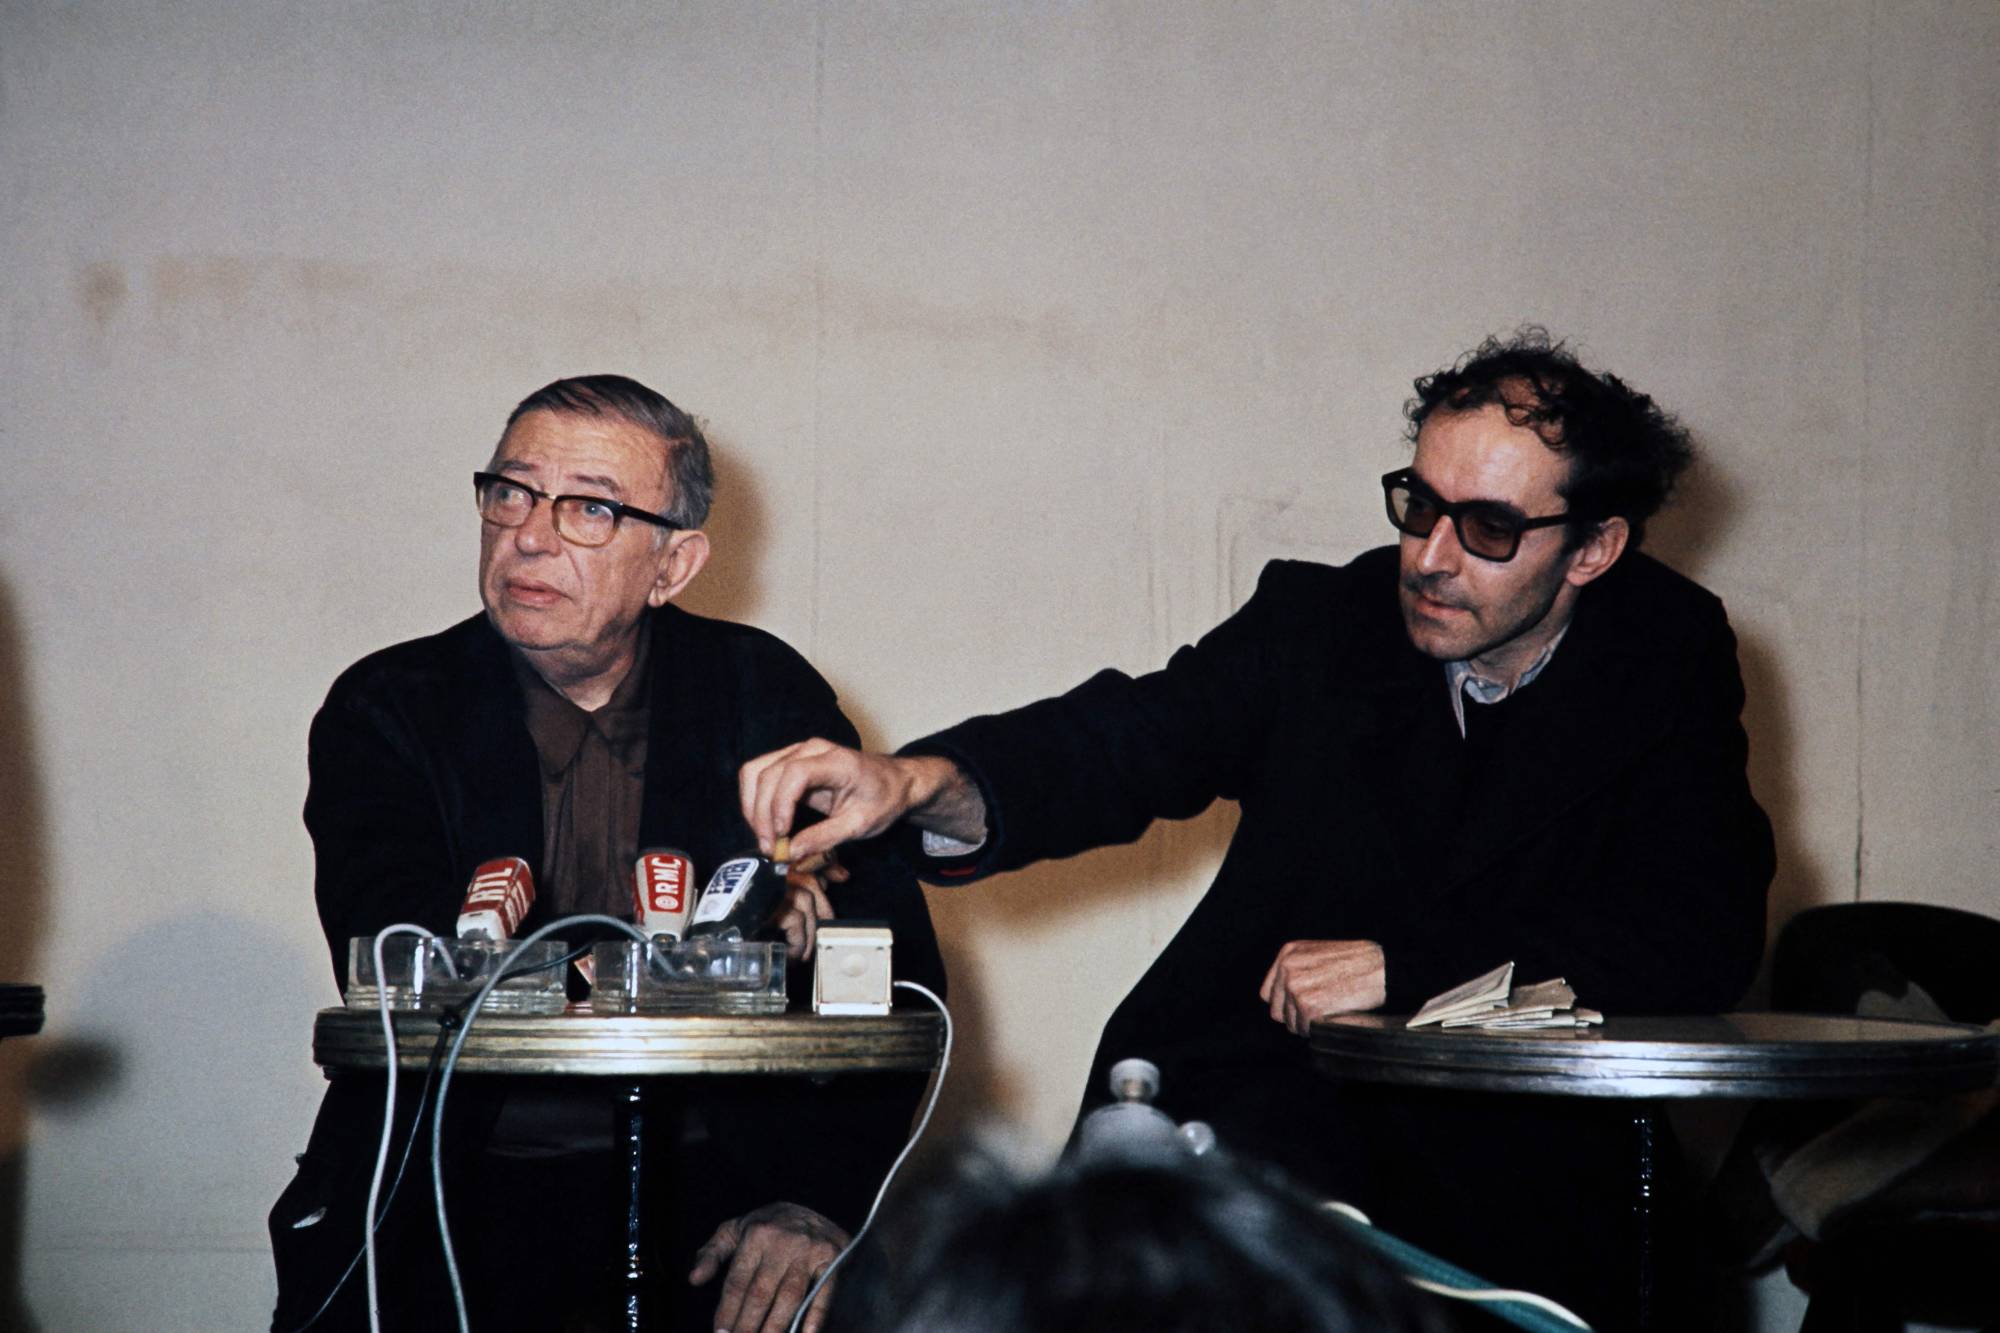 13 of the best Jean-Luc Godard films to watch